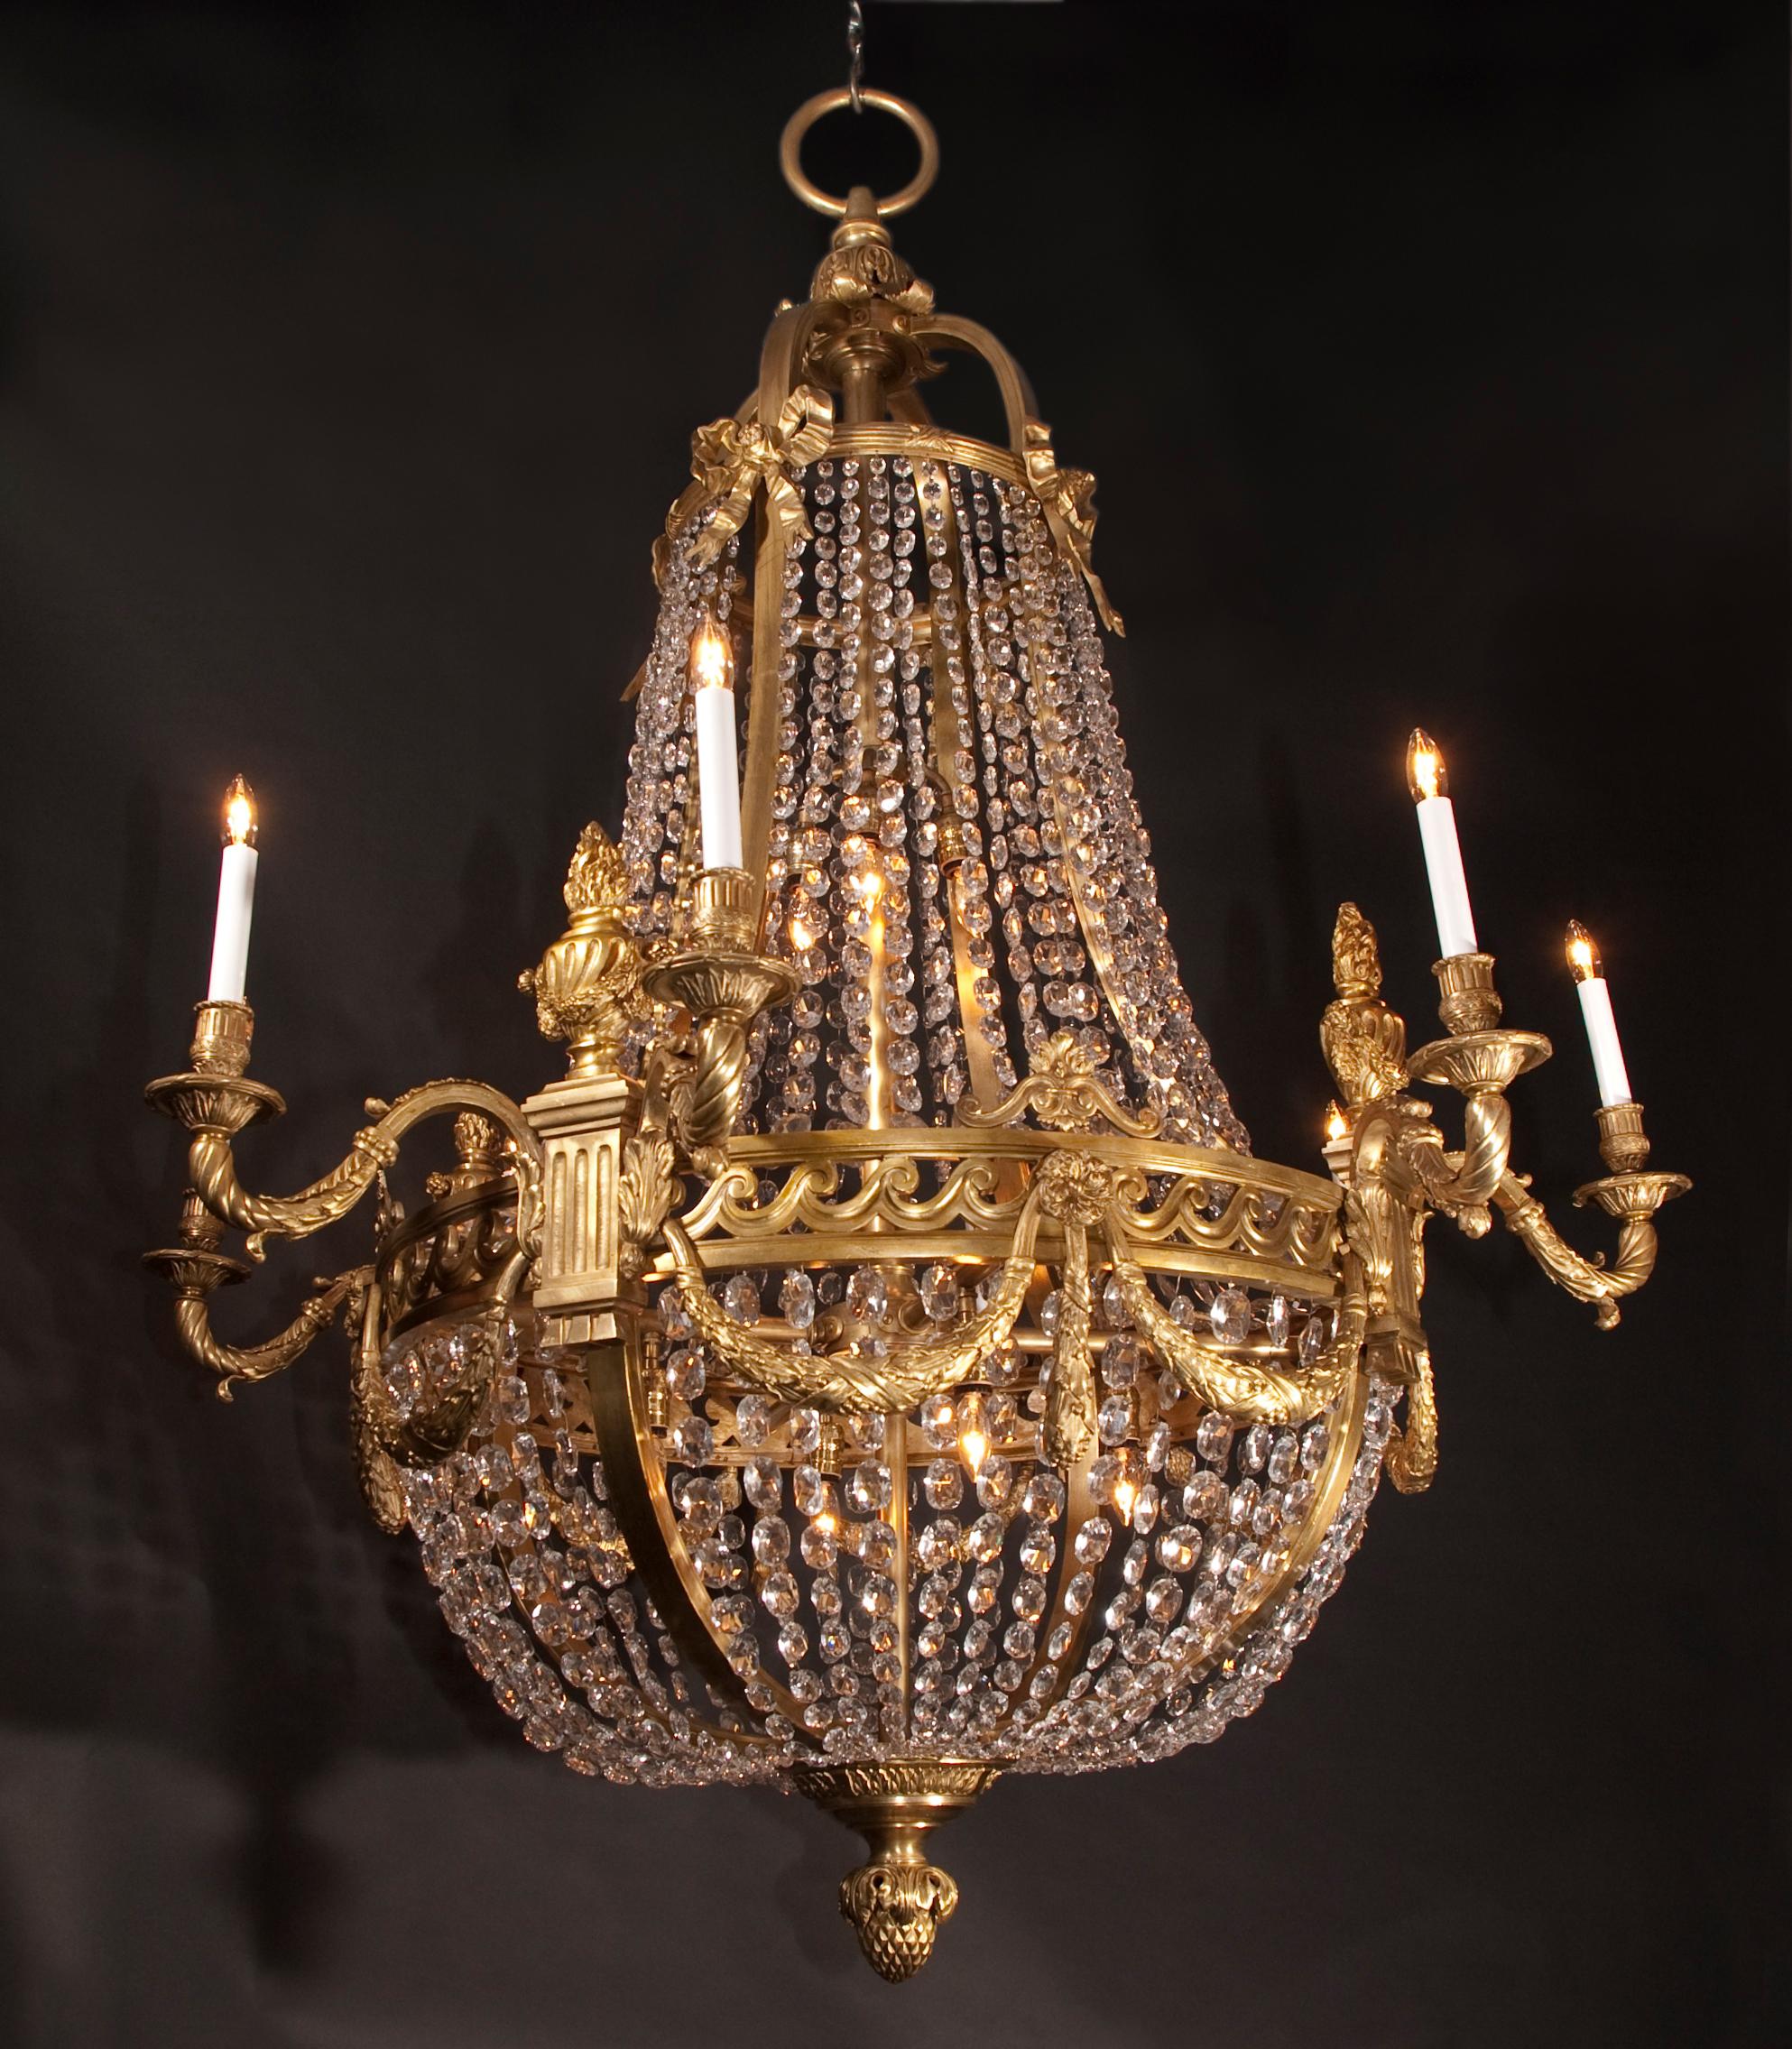 Ces magnifiques lustres Grand Louis XVI sont en bronze et drapés de rangées de cristaux octogonaux. La paire d'antiquités françaises date du XIXe siècle et offre une multitude de détails. La couronne est un groupe de feuilles d'acanthe, tombant en